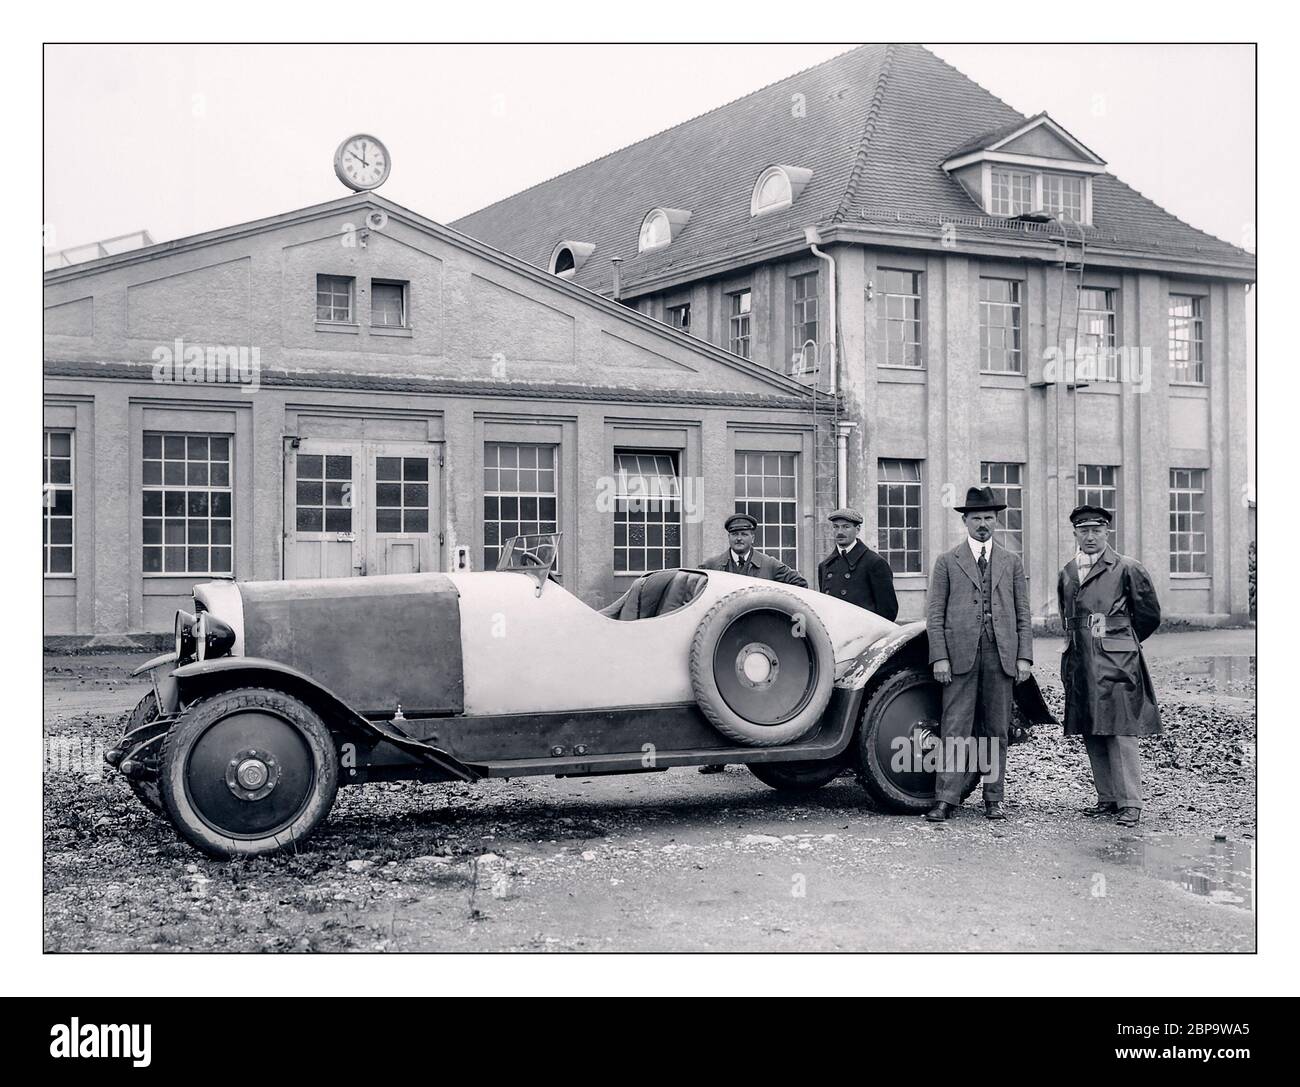 1921 Maybach 22/70 PS W3 , Karl Maybach New Car Brand präsentierte auf der Berliner Automobil-Ausstellung im September 1921 sein erstes Serienfahrzeug – den Maybach W 3. Das fünf Meter lange Fahrzeug, das Geschwindigkeiten von bis zu 110 km/h erreichte, wurde vom 70 ps (52 kW) starken Reihensechskylinder-W 2 angetrieben. Zu den innovativen Merkmalen des W 3 gehörten eine Vierradbremse mit mechanischem Bremskraftausgleich und ein Zweigang-Getriebe ohne Schaltung. Die Gänge wurden durch Drücken eines fußbetätigten Starthebels gewechselt. Stockfoto